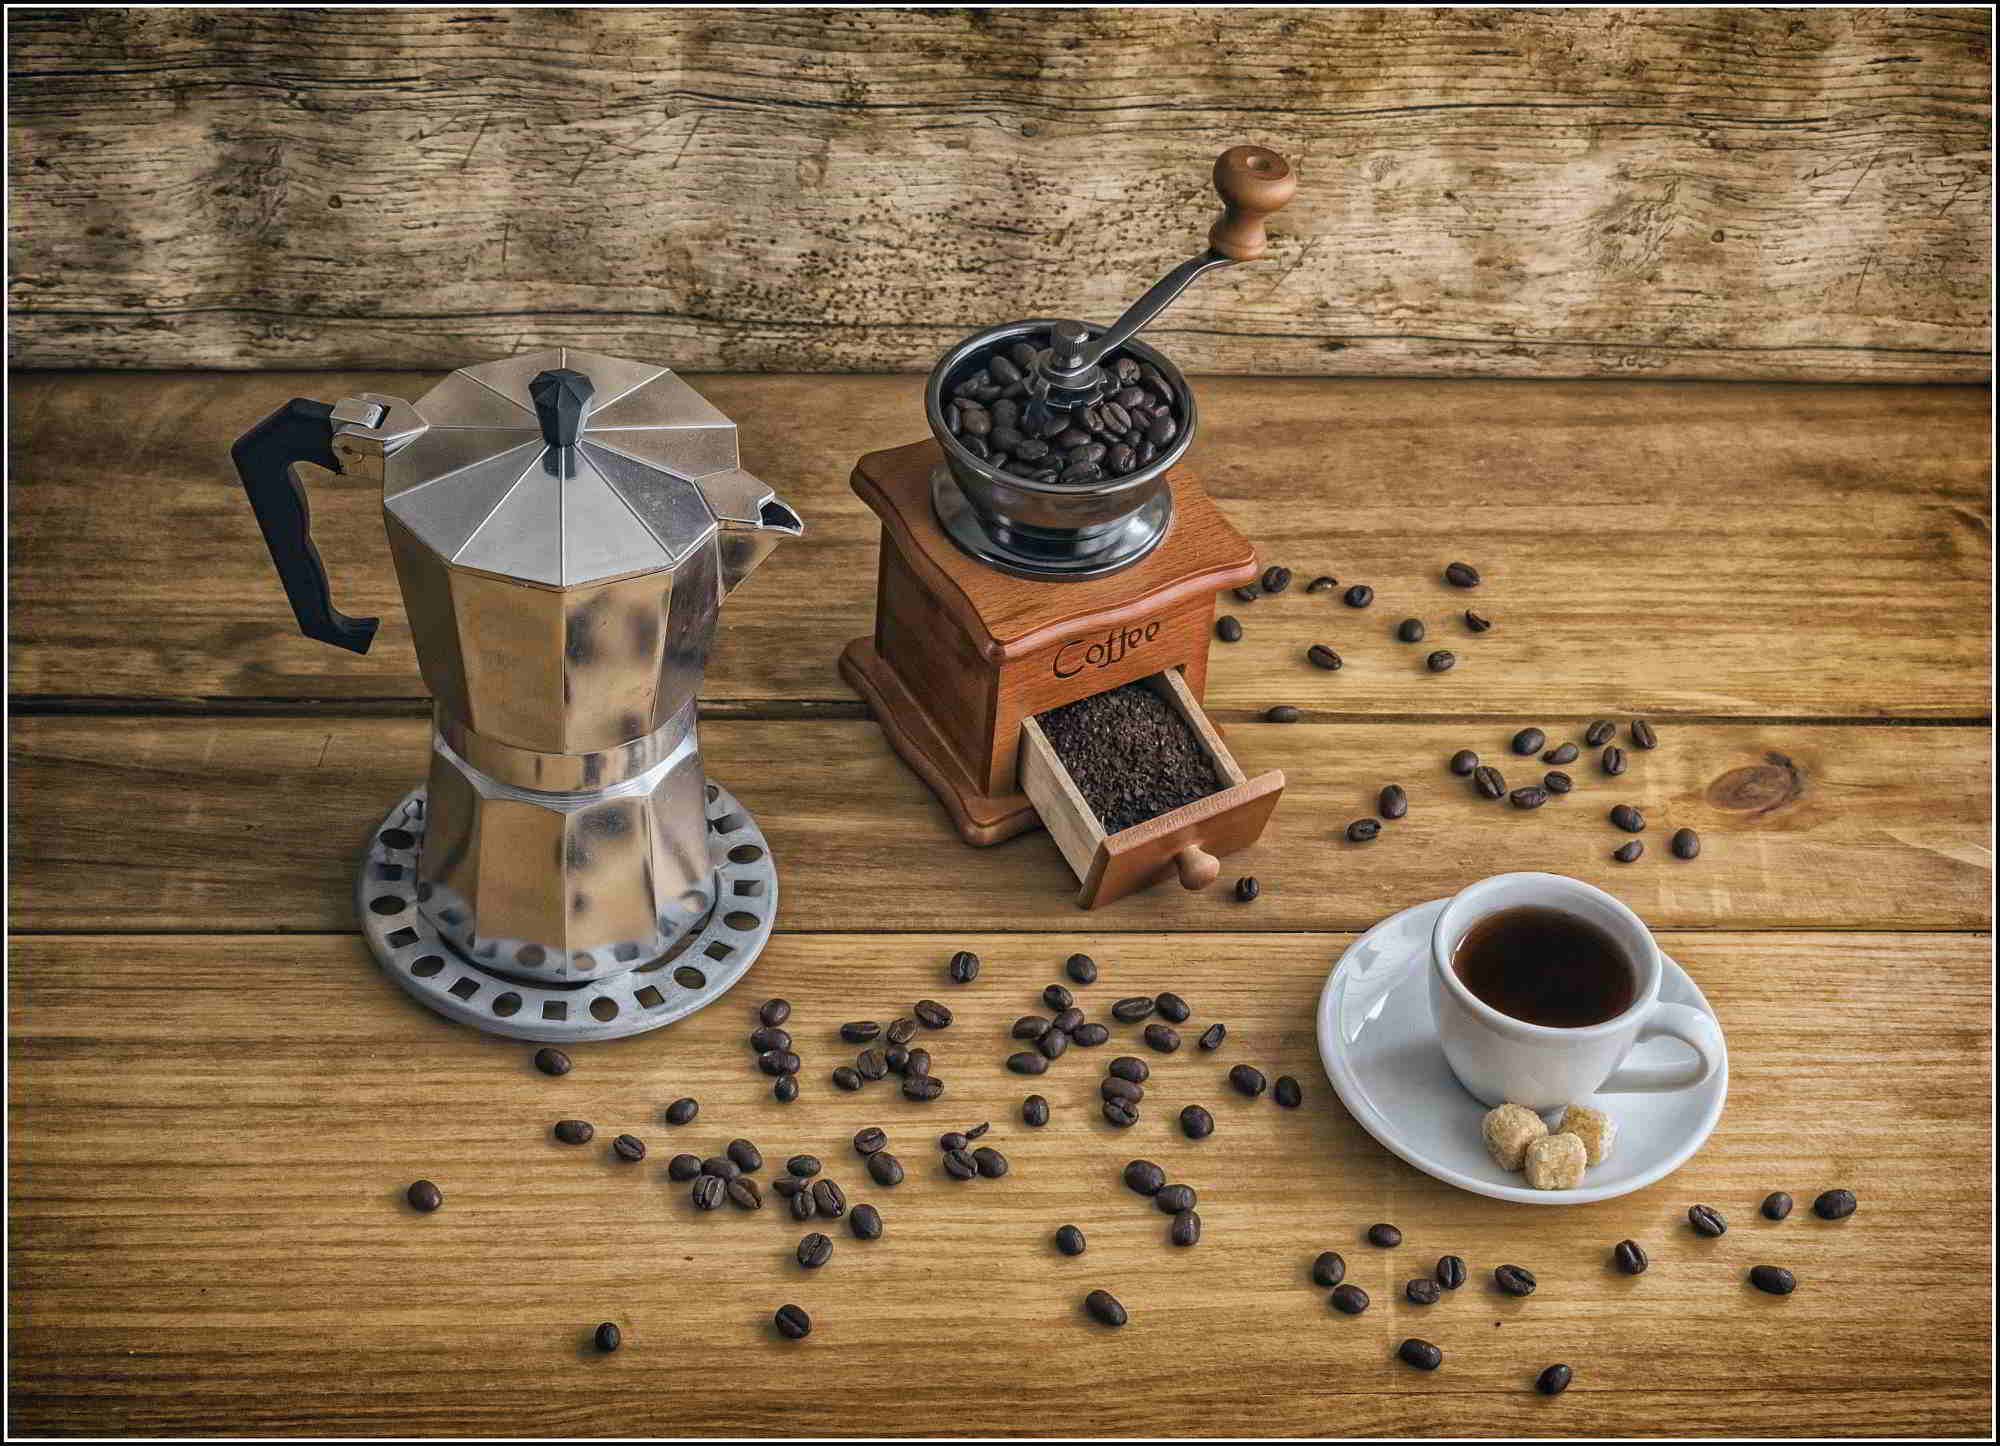 Top ljestvica najboljih mlinica za kavu za dom i kafiće u 2020. godini